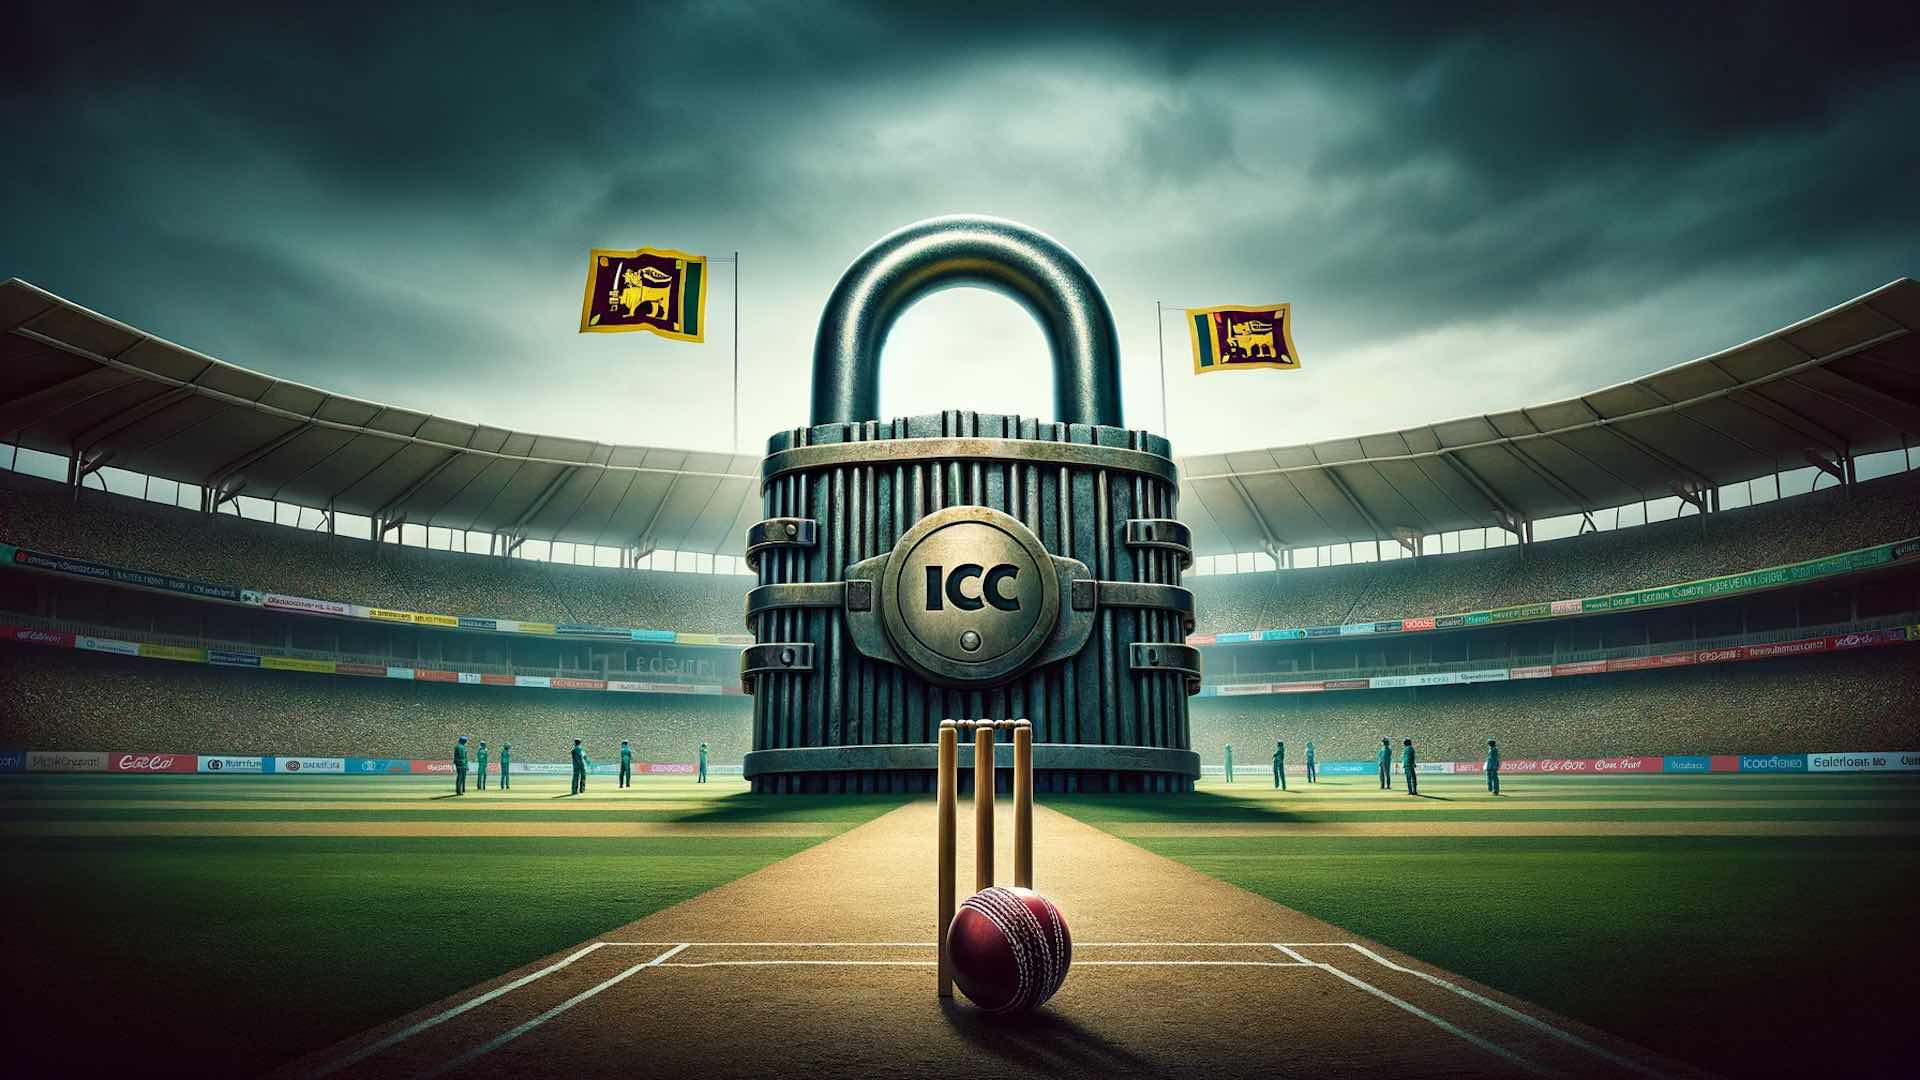 Kuingilia kati serikali kunapelekea ICC kusimamisha mchezo wa Kriketi wa Sri Lanka